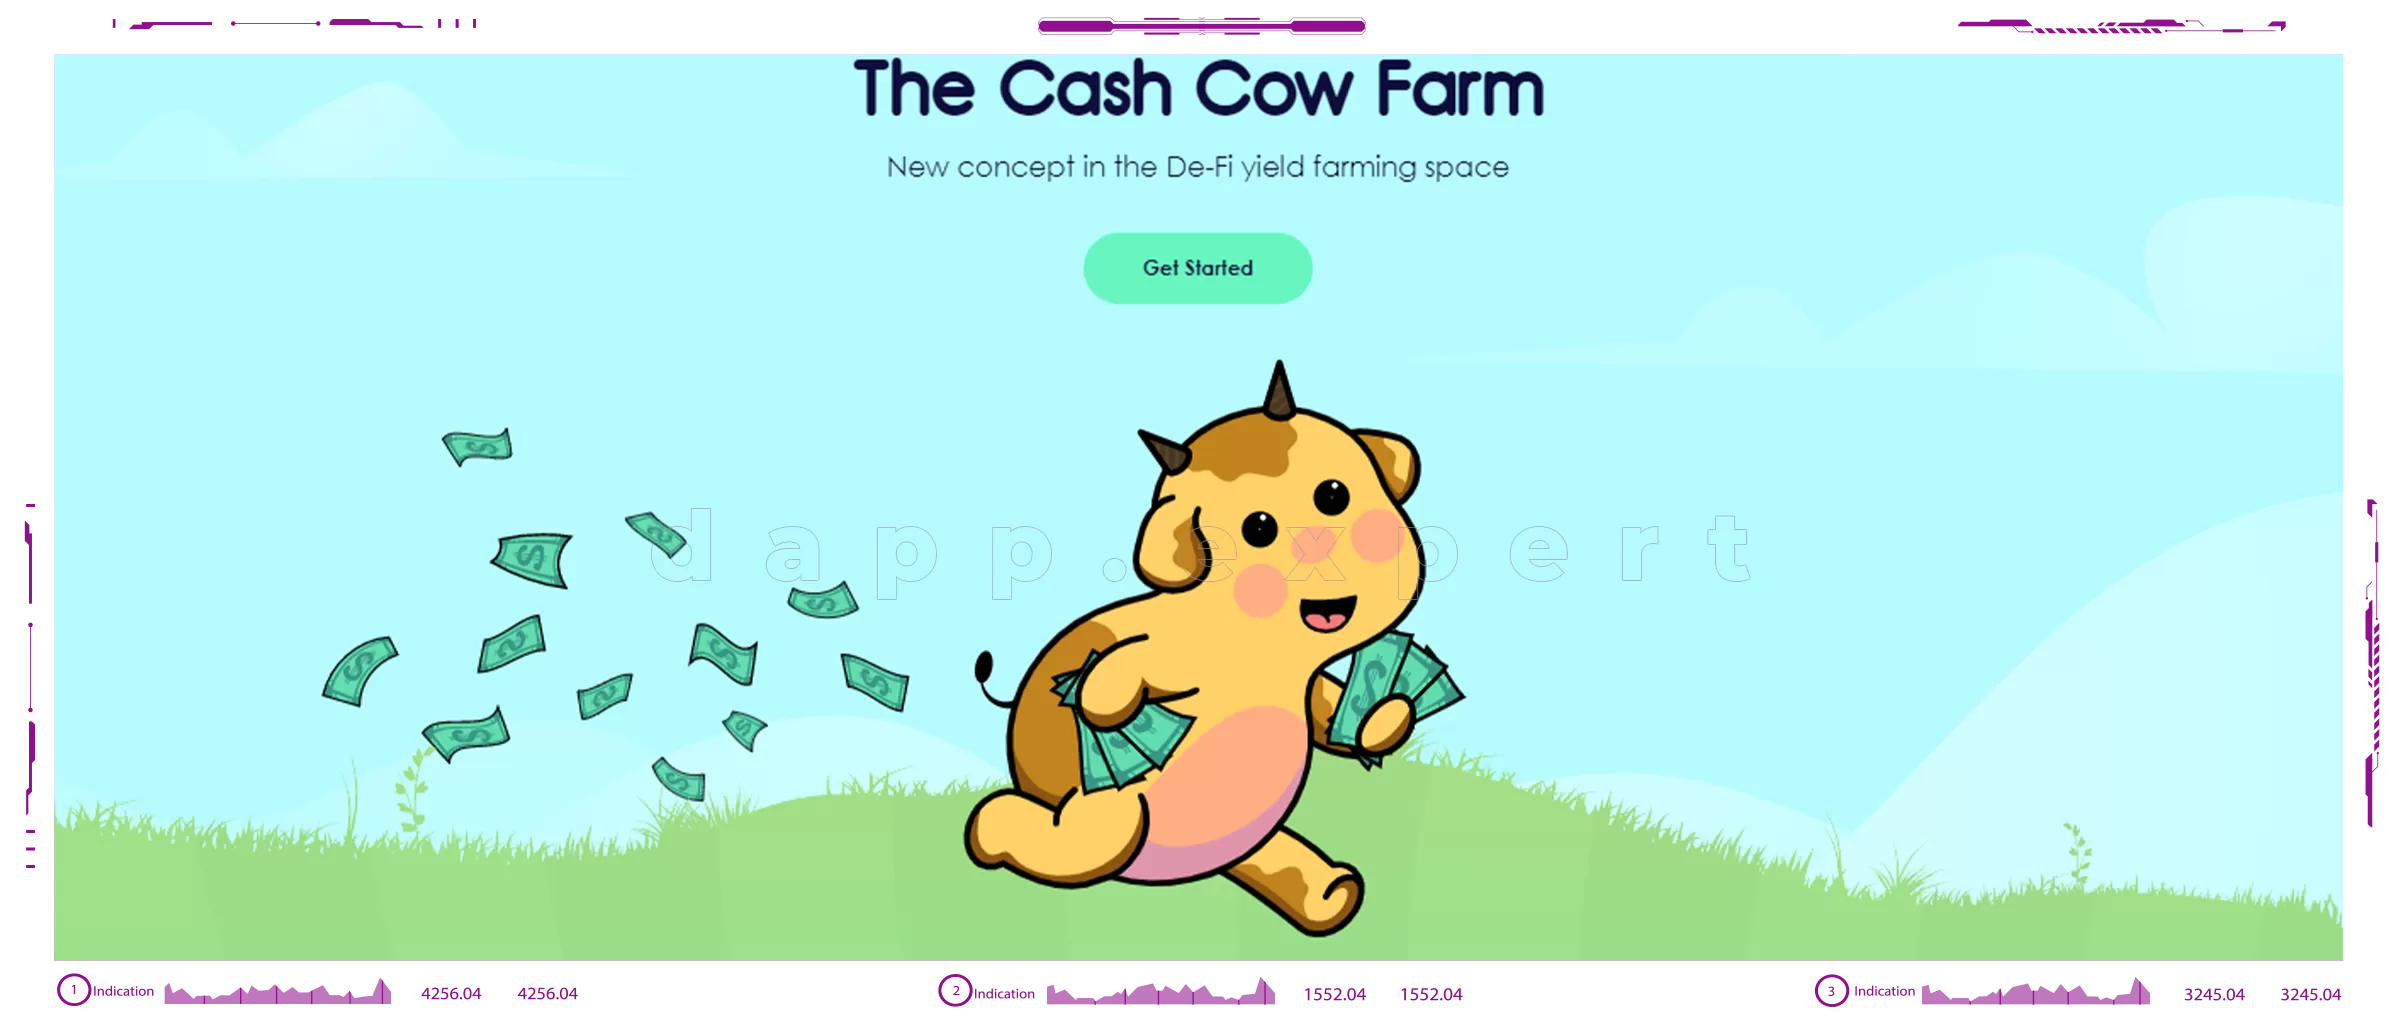 Dapp Cash Cow Farm